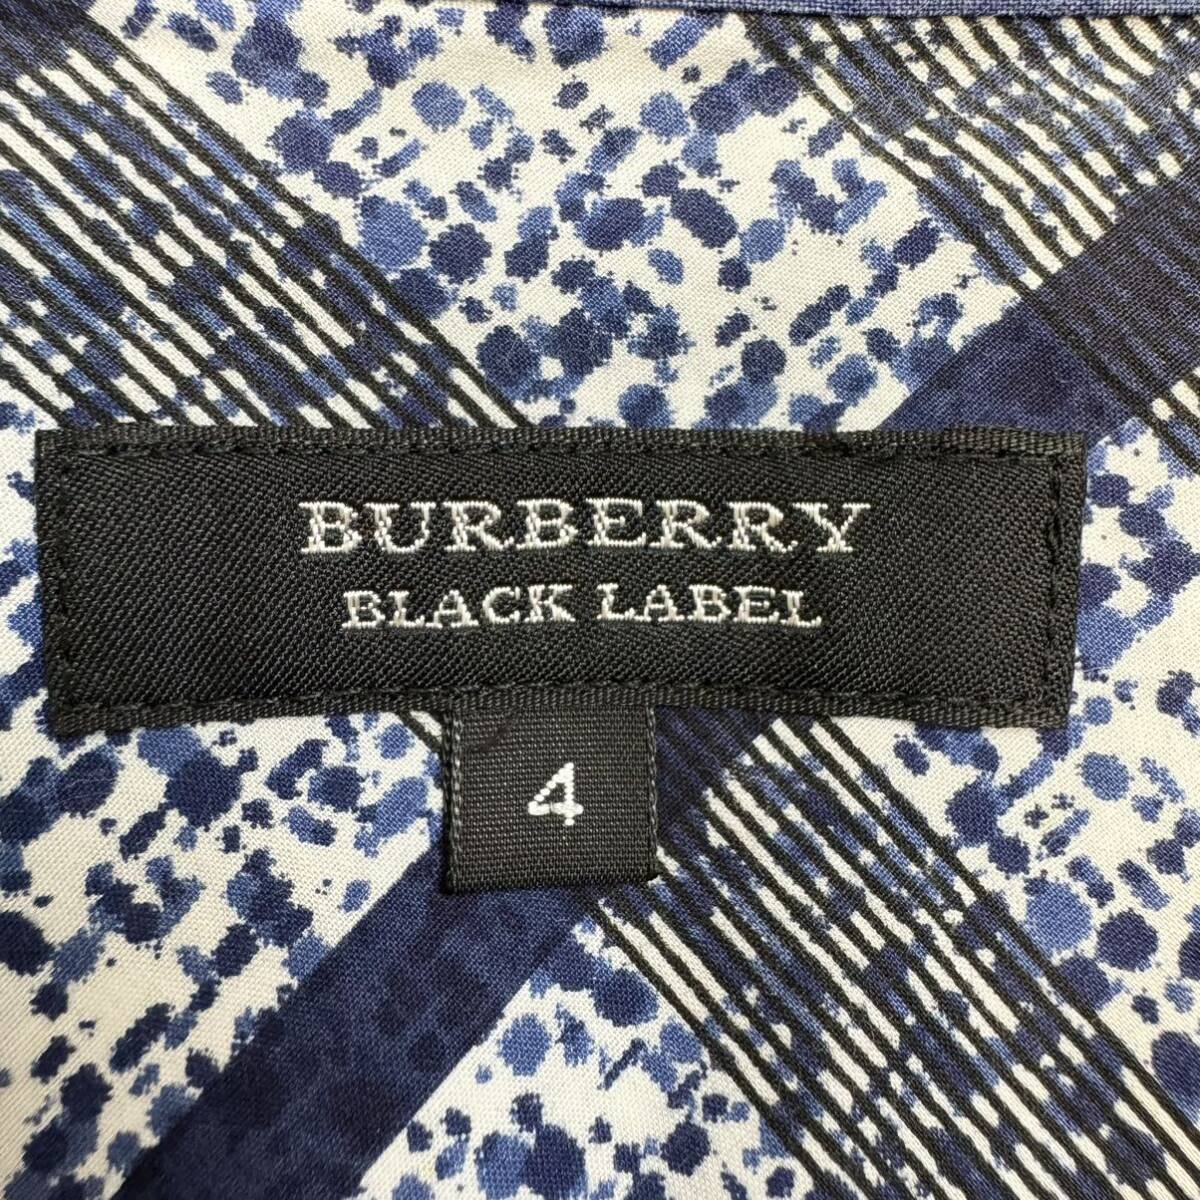  превосходный товар супер редкий XL Burberry Black Label noba проверка общий рисунок mega проверка длинный рукав сорочка BURBERRY BLACK LABEL размер 4 весна лето 